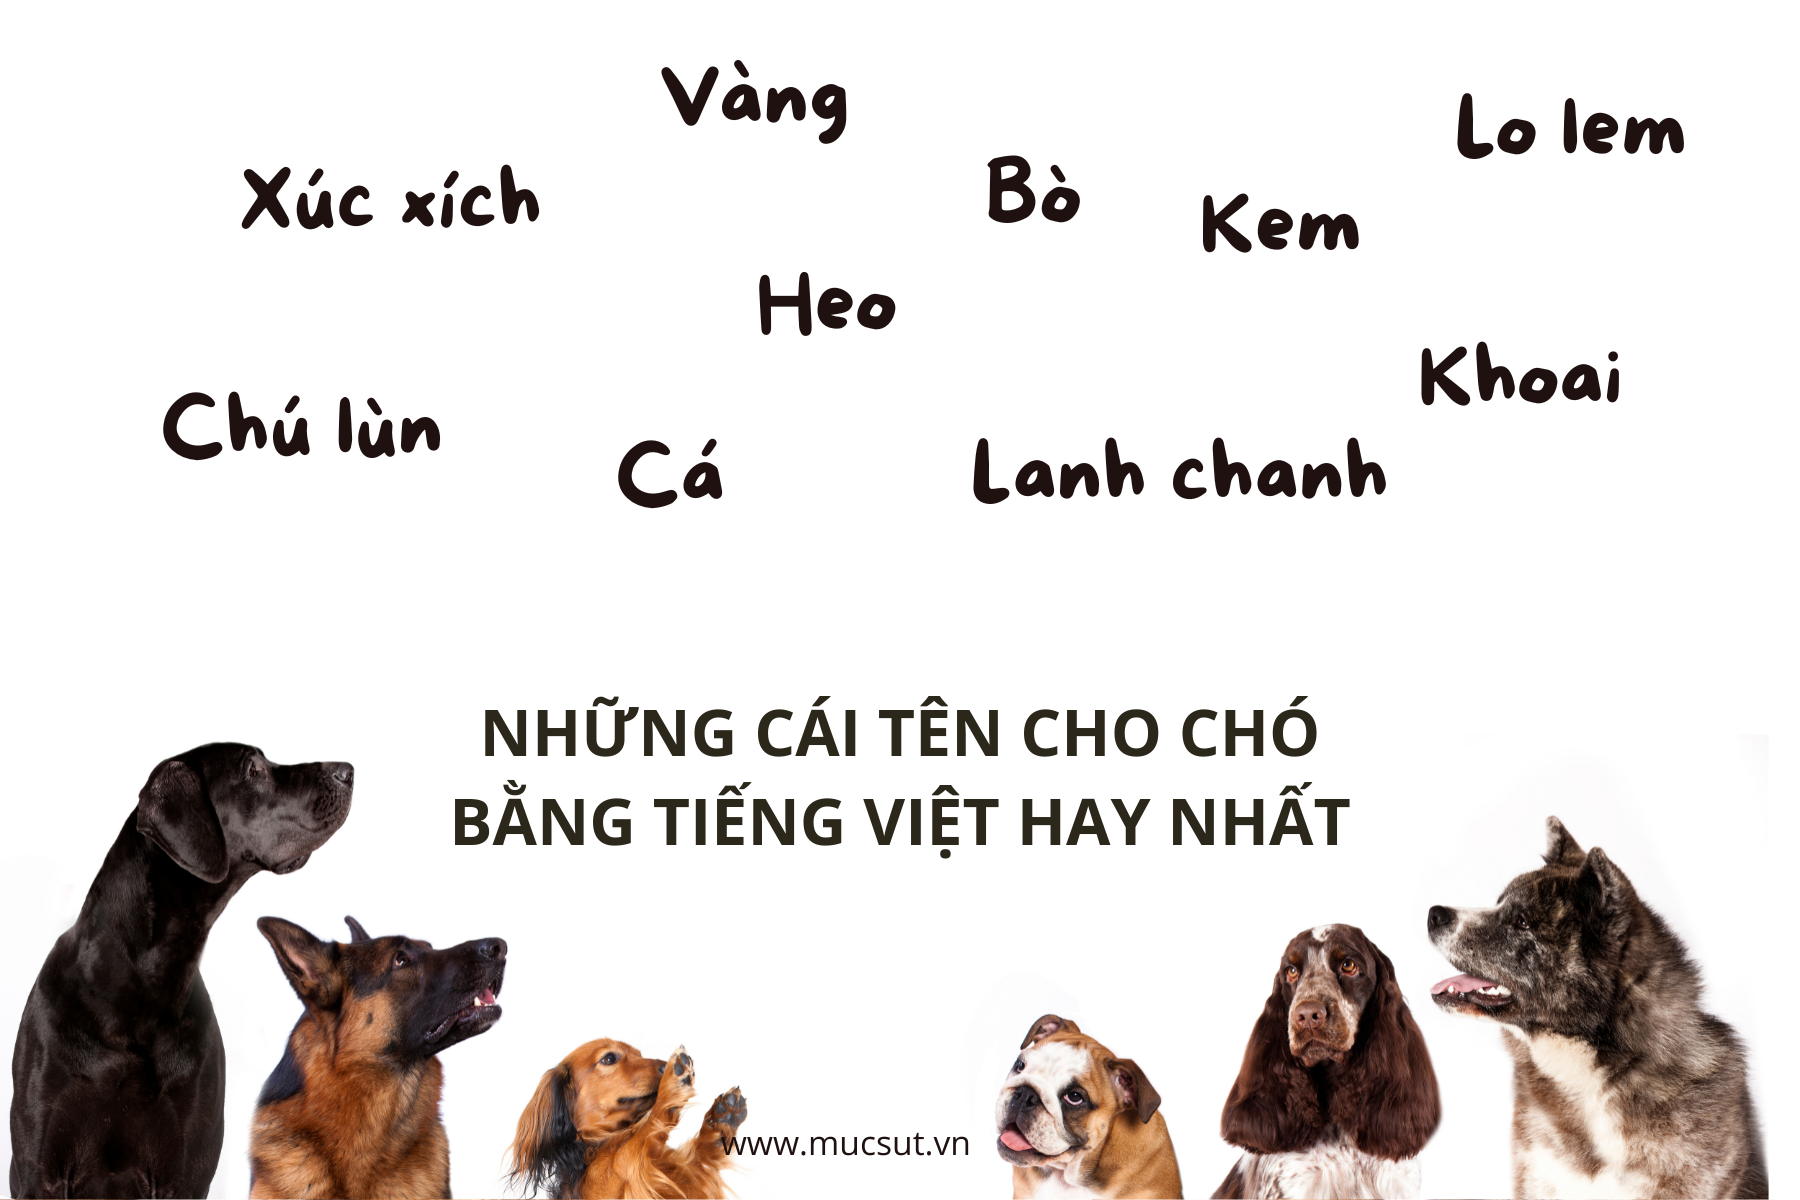 Đặt tên cho chó và mèo bằng tiếng Việt